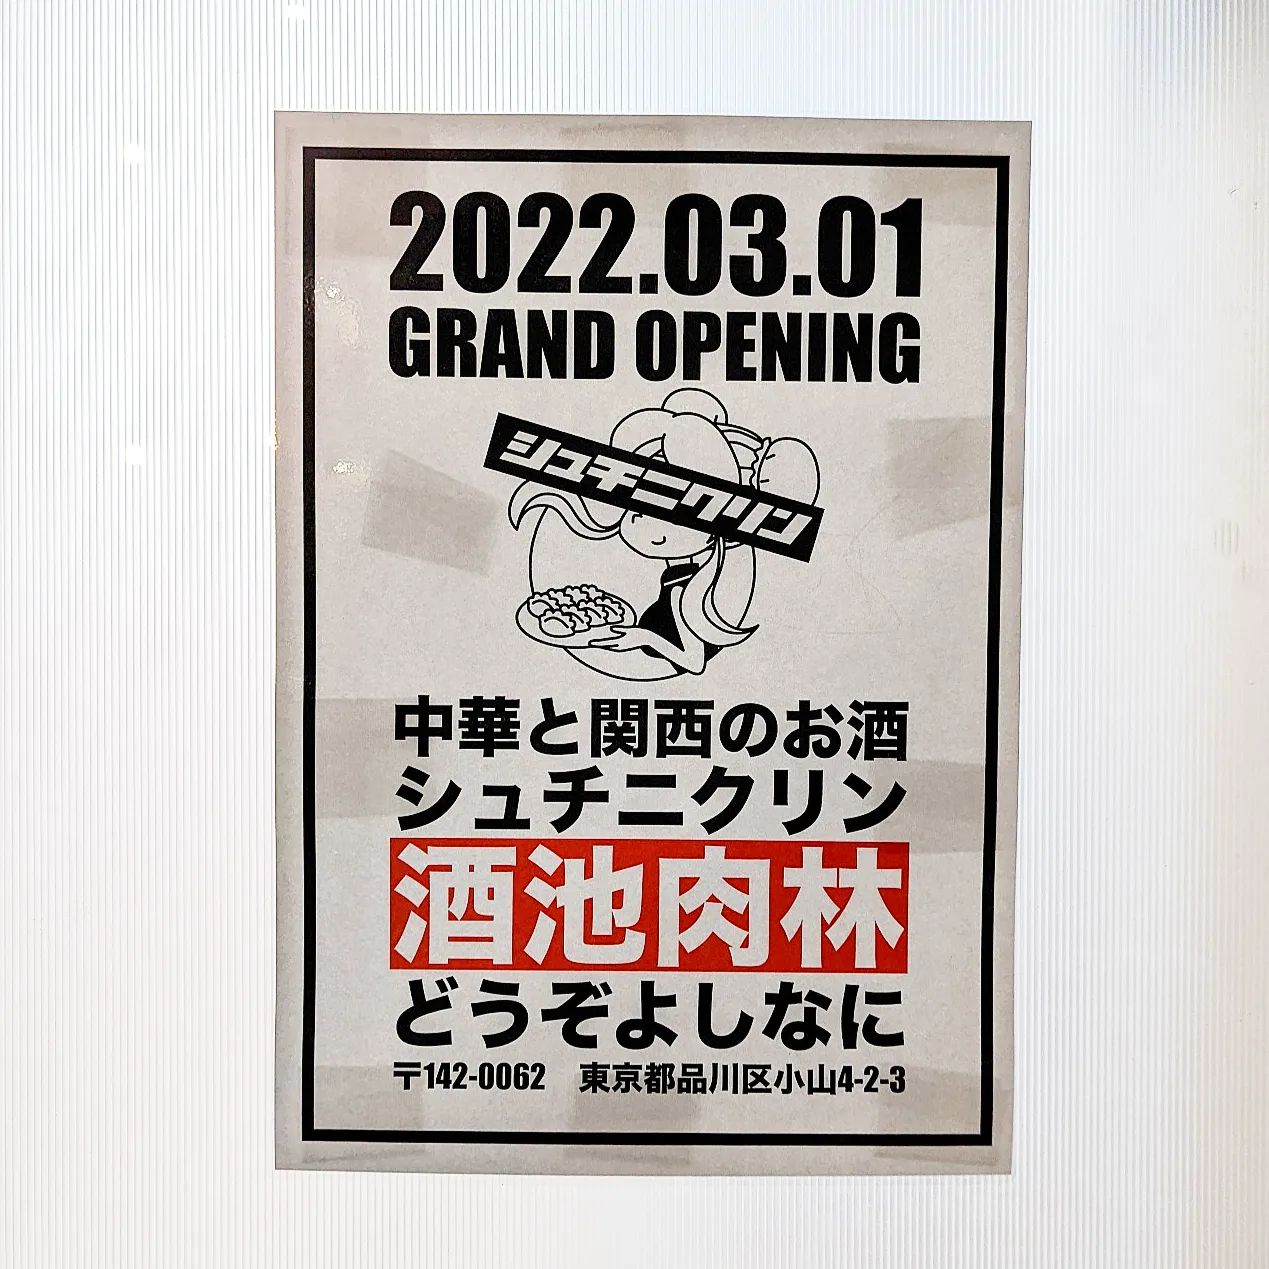 #武蔵小山新店情報 #酒池肉林 2022年3月1日にオープンの中華と関西のお酒のお店でございますね。なんか美味しい餃子出てきそうでございますな！場所は、武蔵小山駅からミスドの前を通り過ぎて26号線を渡ってすぐの新しいビルでございます。パン屋nemoの前位でございますね。もっと武蔵小山のお店を探す時はメインサイトが見やすいですぞ！プロフィール画面に記載のURLからGO！→@musashikoyama.news※本店だと地図見やすくなっとります。#武蔵小山 #武蔵小山情報 #武蔵小山ランチ #ランチ #グルメ #武蔵小山商店街 #武蔵小山パルム #武蔵小山商店街パルム #武蔵小山駅 #武蔵小山グルメ #武蔵小山ランチ #武蔵小山ディナー #武蔵小山食事 #武蔵小山モーニング #東京 #東京グルメ #東京 #東京グルメ  #musashikoyama #tokyofood #tokyo #新店 #新店オープン #武蔵小山新店 #武蔵小山オープン